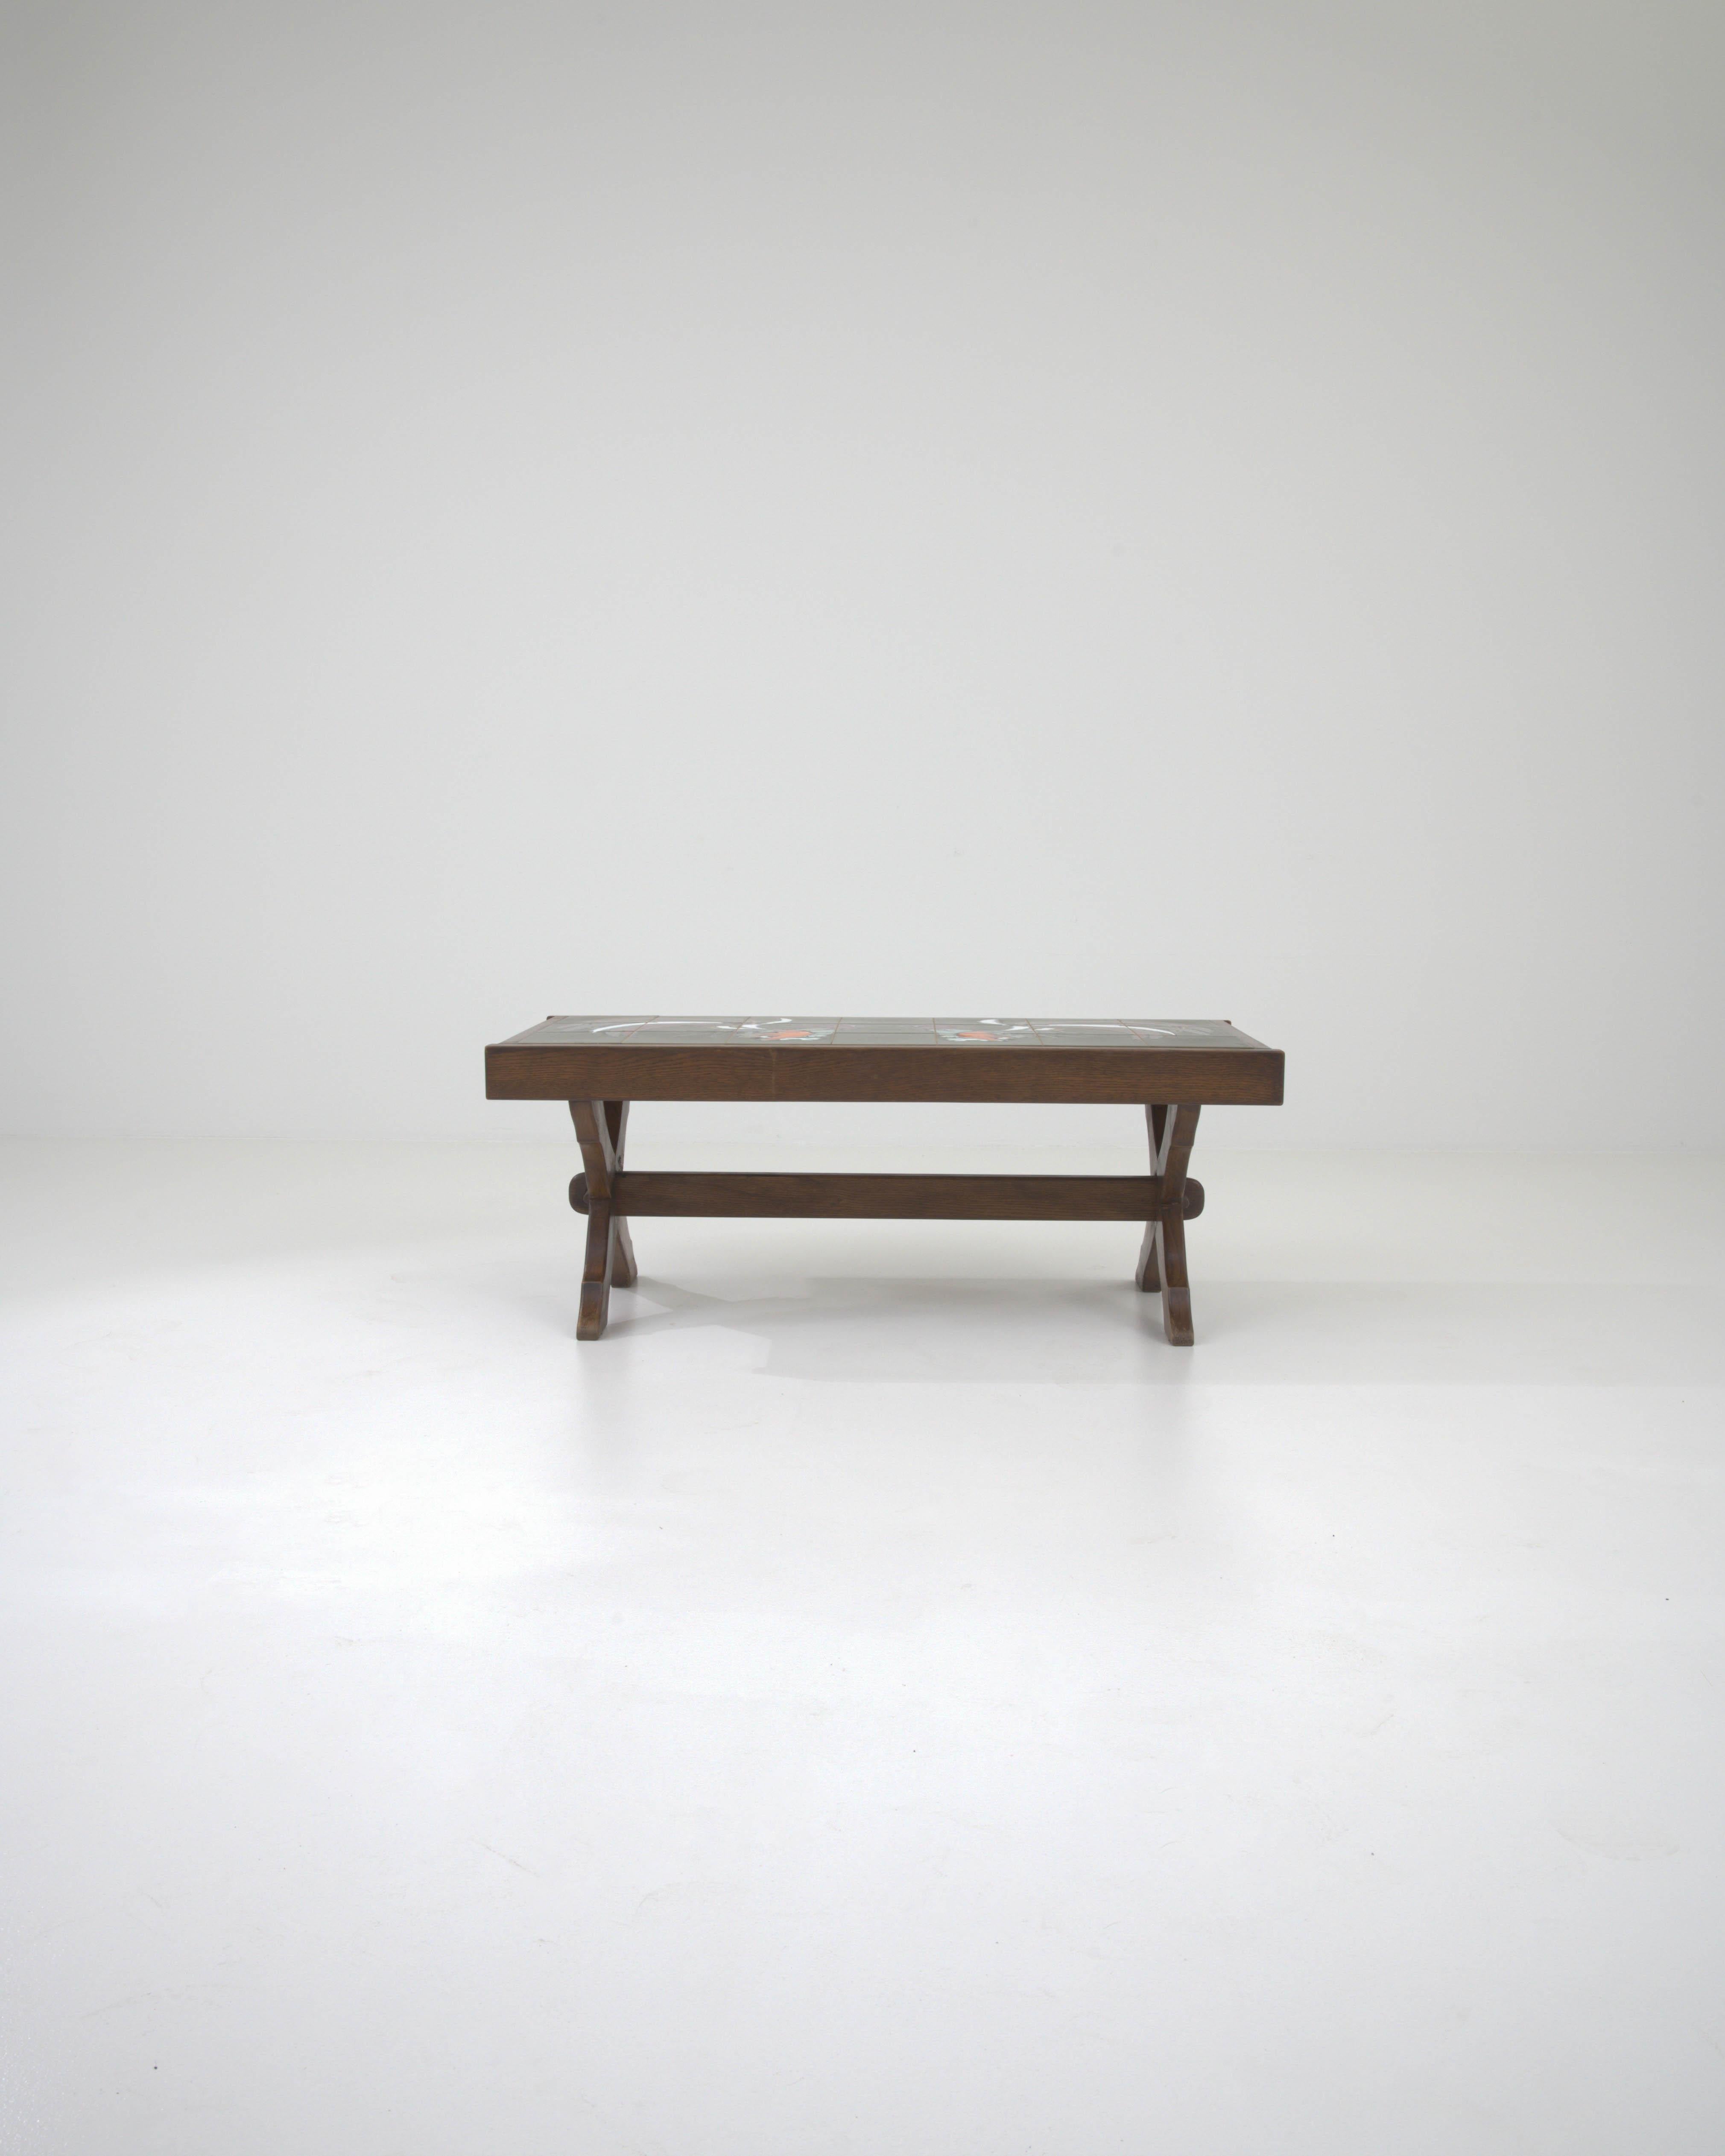 Présentant un mélange frappant de charme rustique et de flair artisanal, cette table basse en bois français du 20e siècle avec plateau en céramique est une célébration de l'artisanat traditionnel. Le cadre en bois robuste, avec sa riche finition